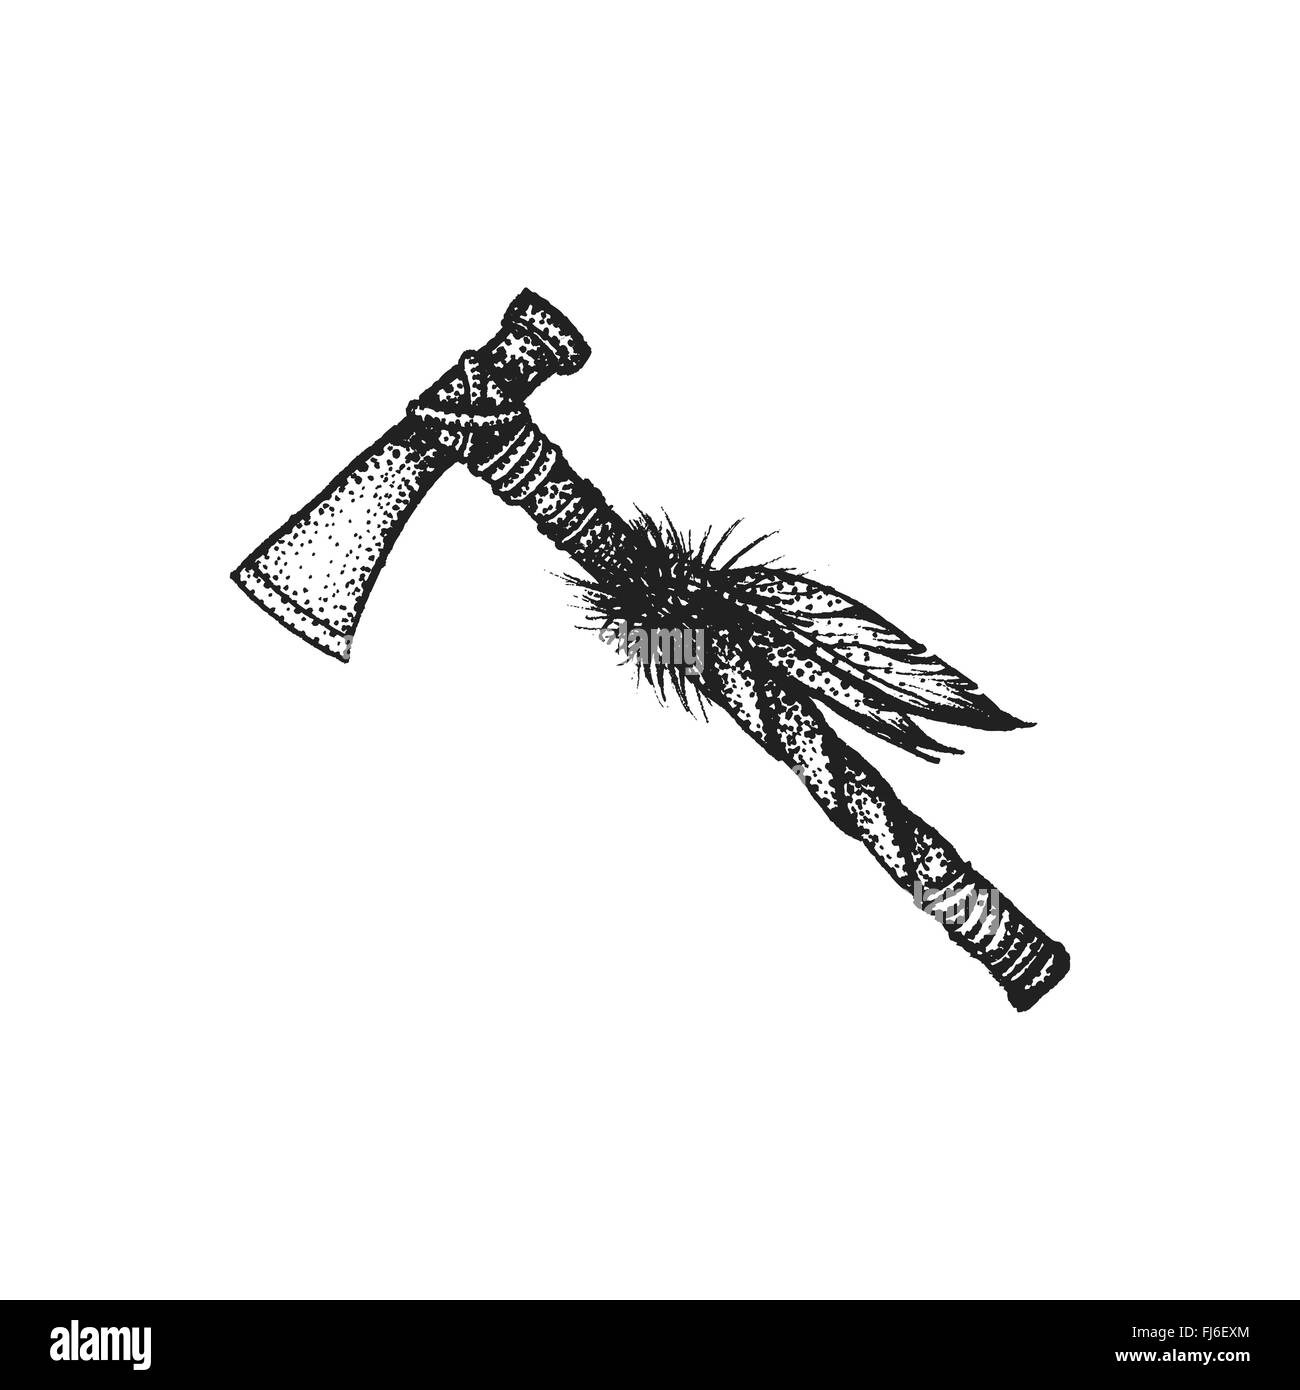 Couleur monochrome noir vector art tattoo rétro avec gravure native american style tomahawk hache de combat décoratif isolé elem Illustration de Vecteur